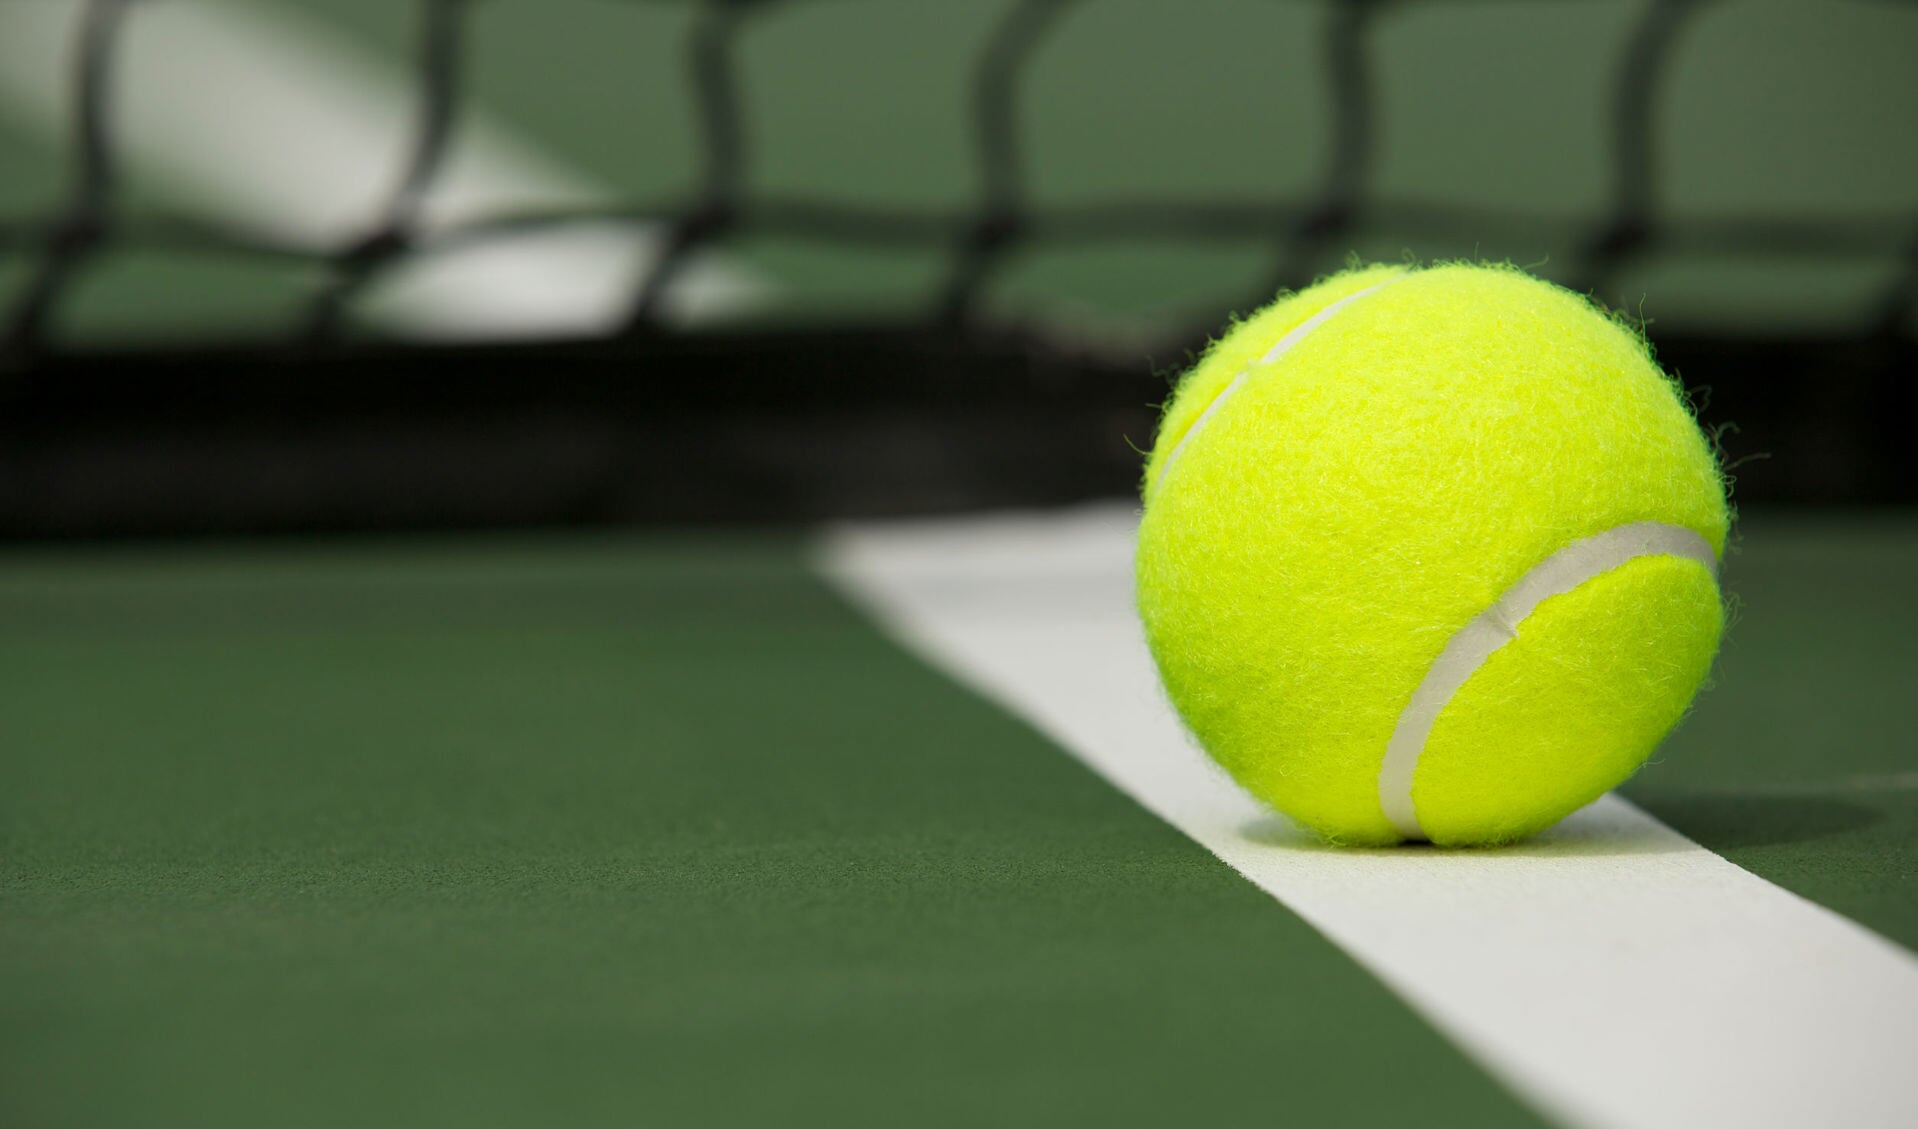 • De Waalrackets uit Vuren houdt een open tennistoernooi. 